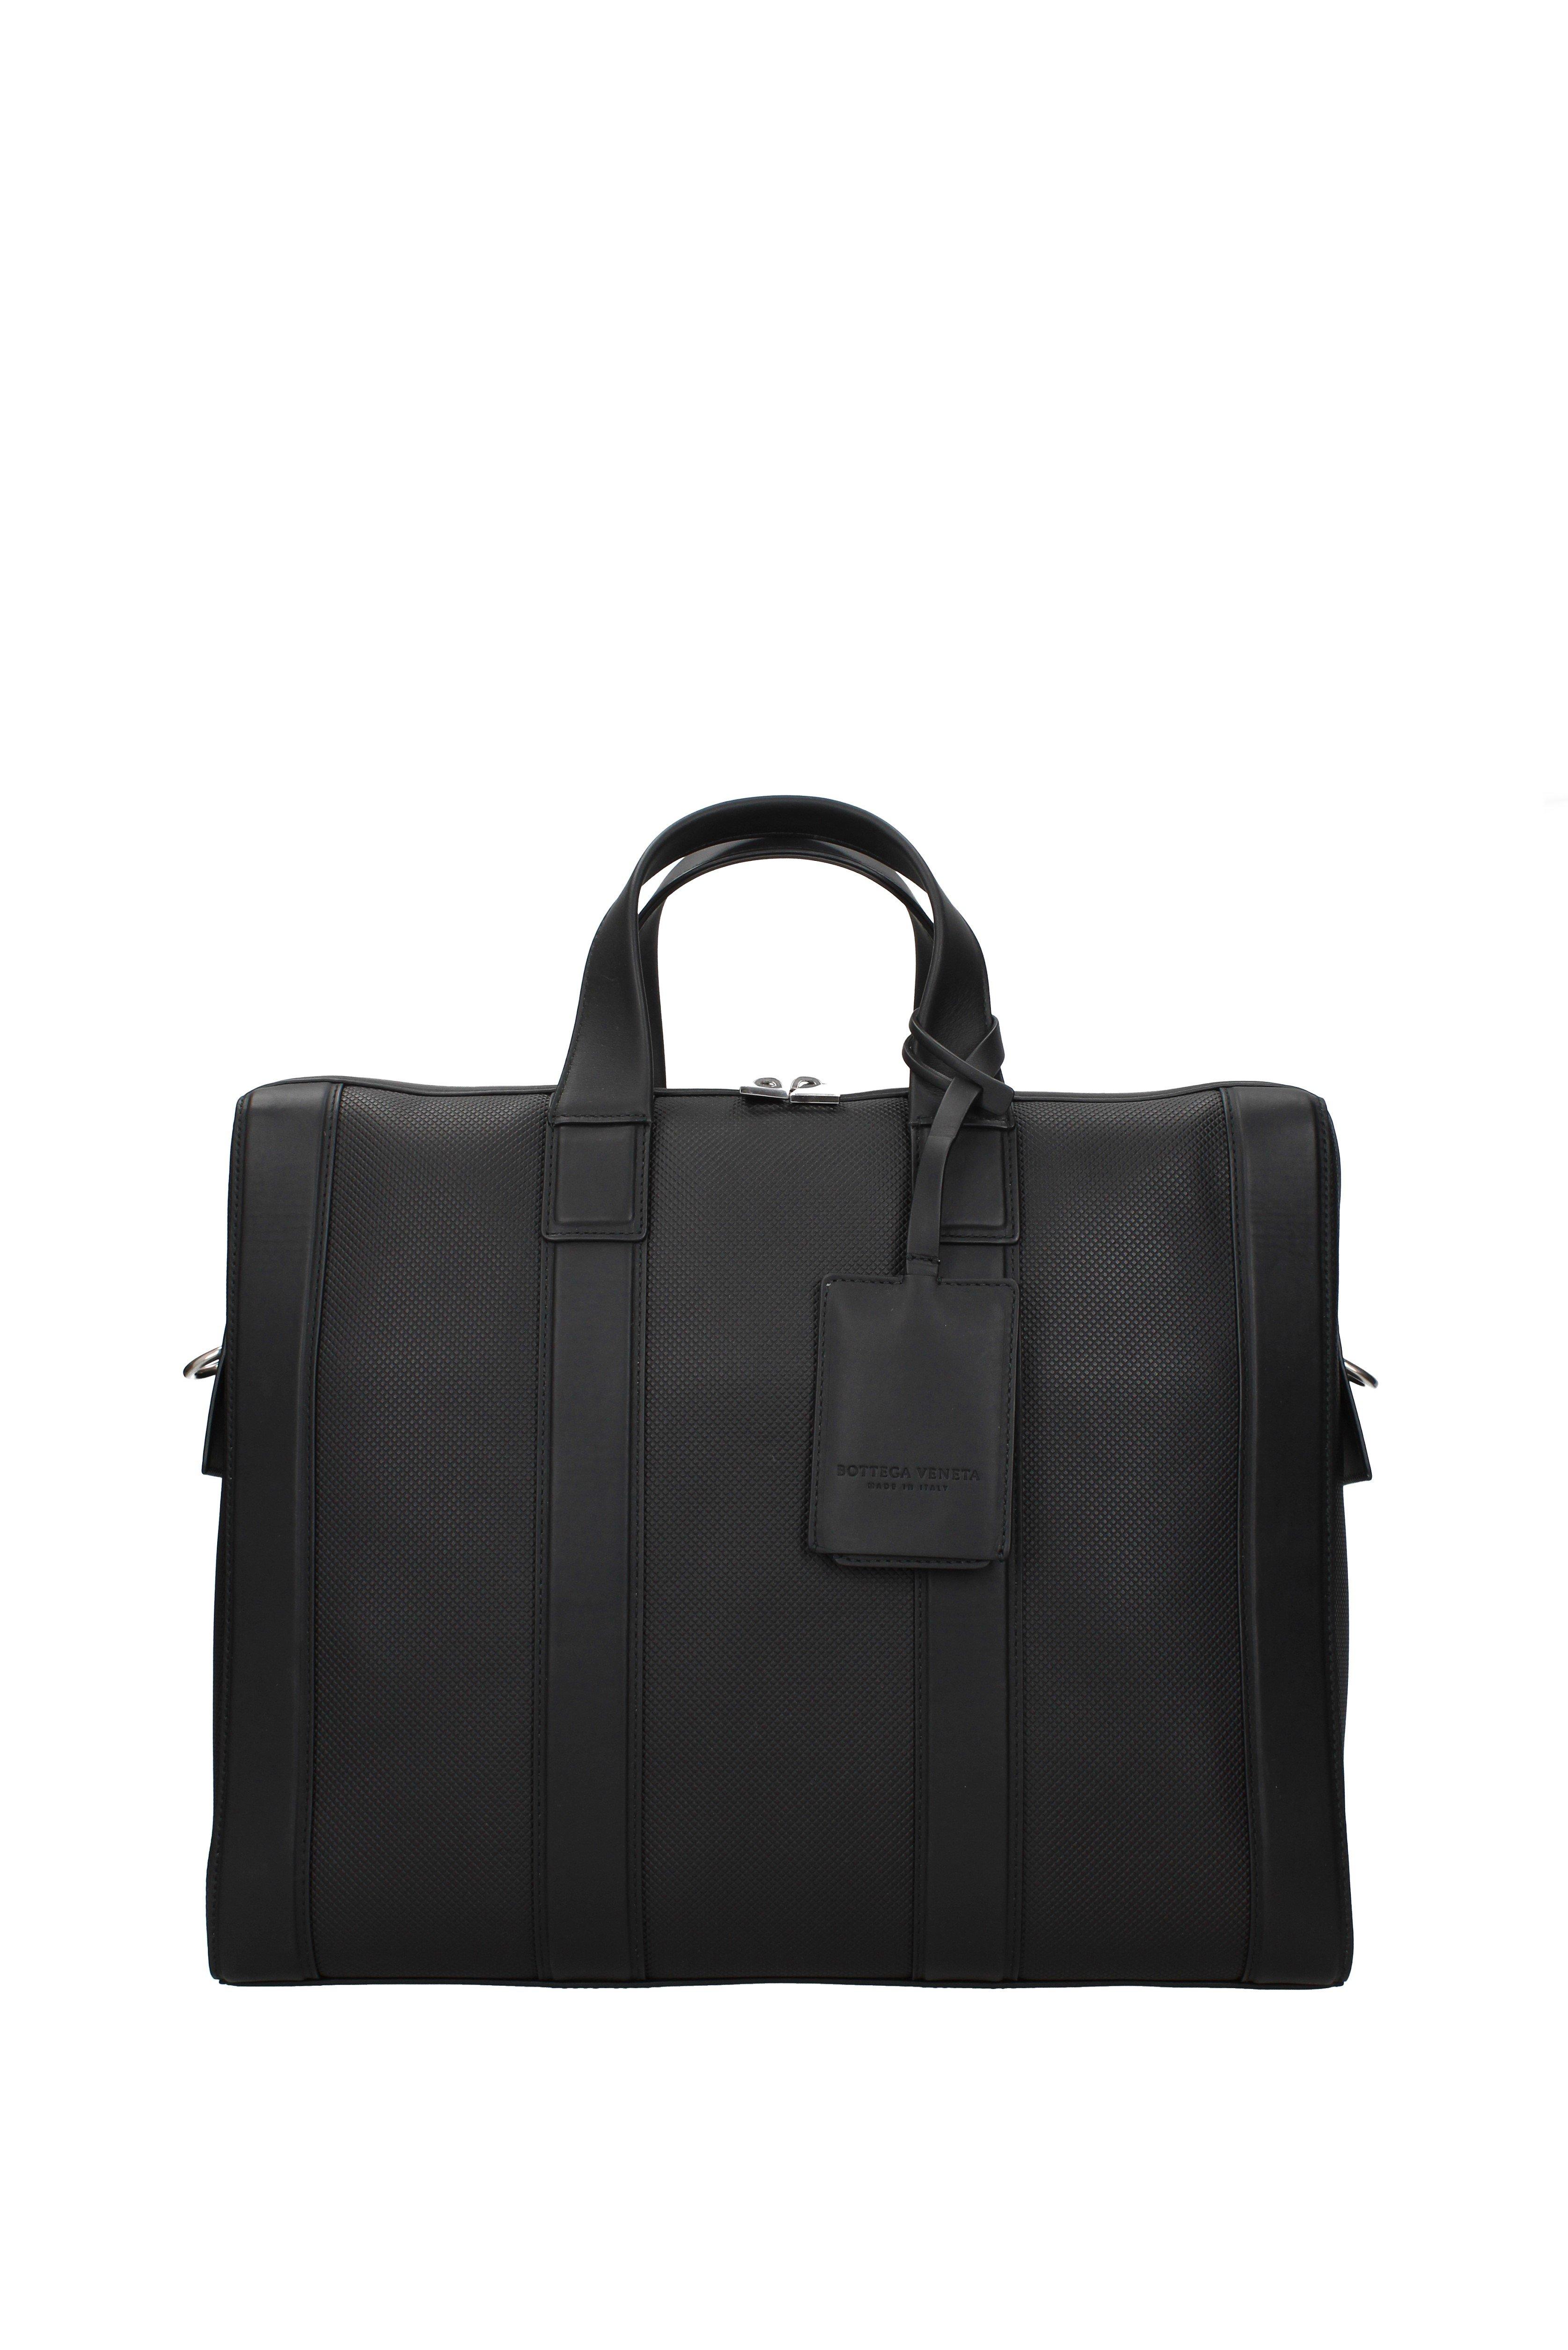 Bottega Veneta Black Work Bags for Men - Lyst